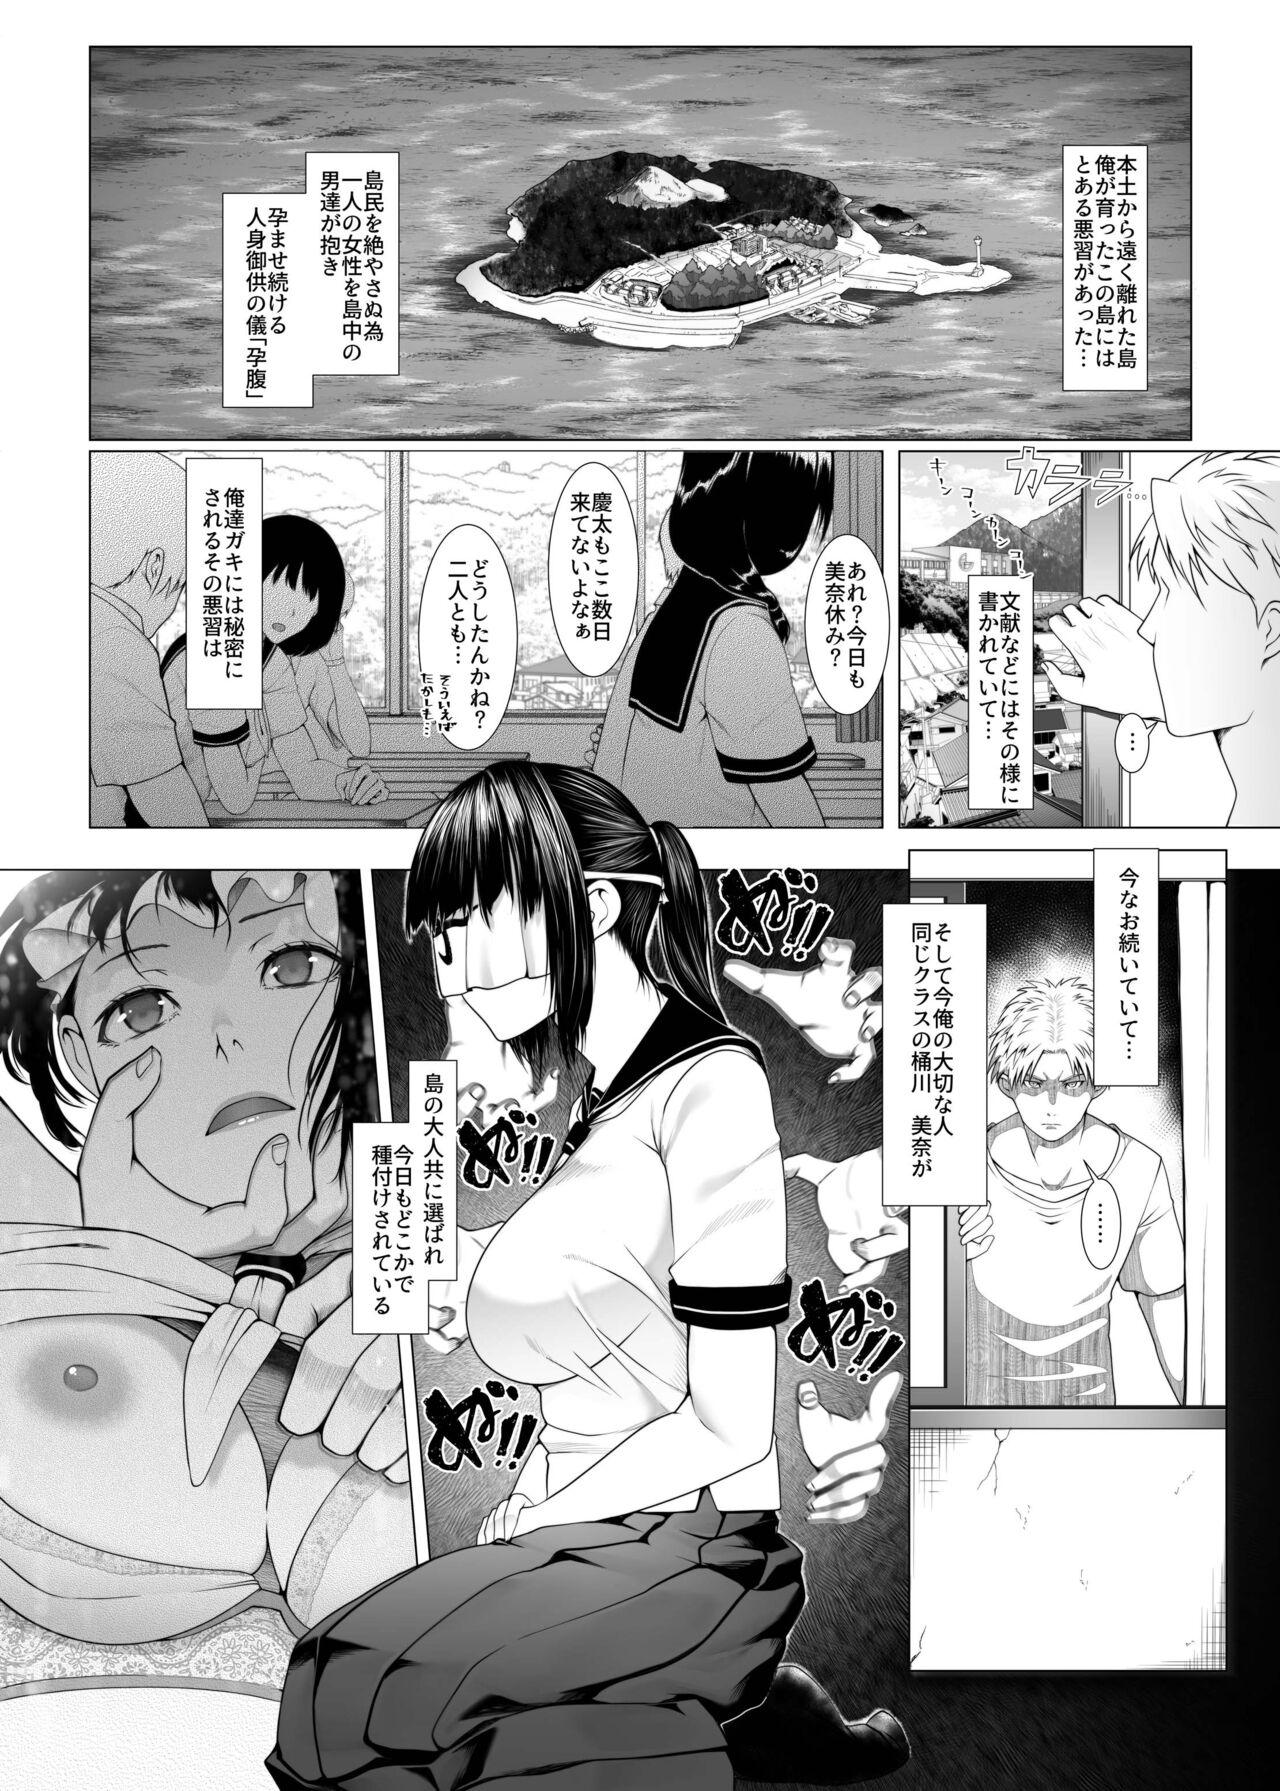 Teamskeet Haramase no Shima 4 - Original Japanese - Page 2